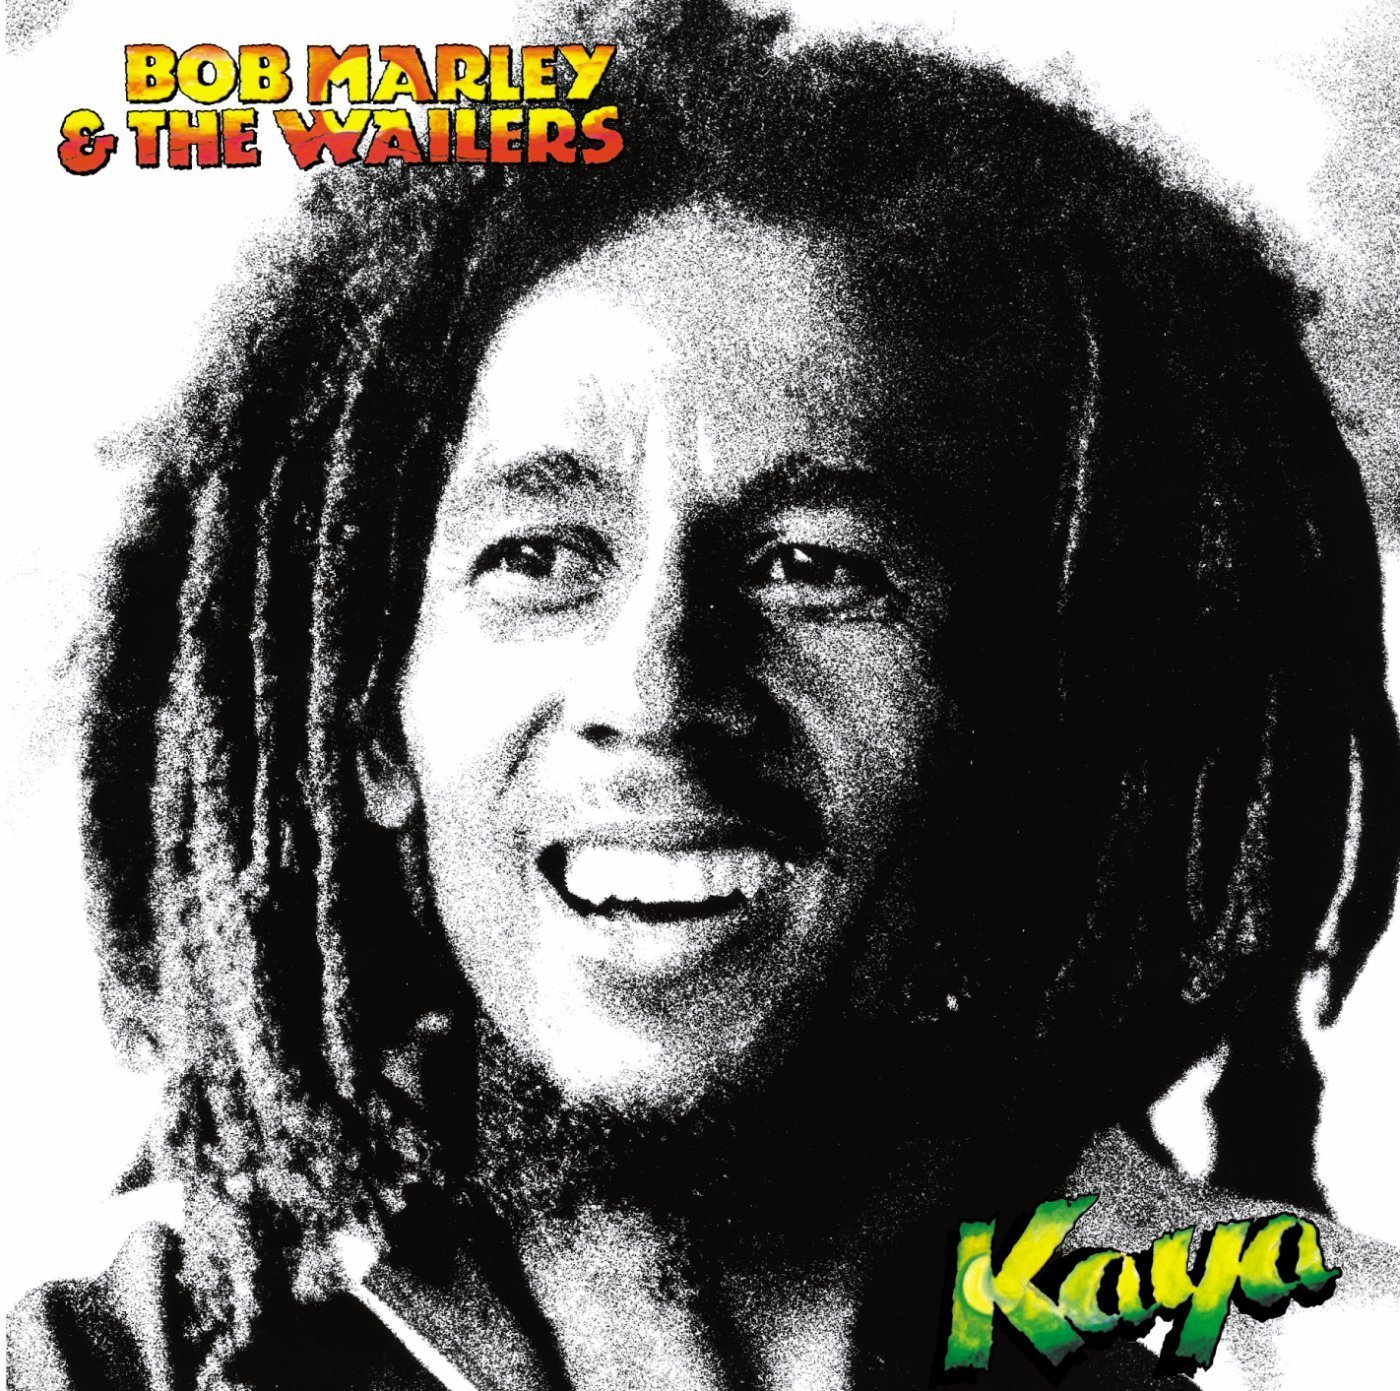 Vinile Bob Marley & The Wailers - Kaya NUOVO SIGILLATO, EDIZIONE DEL 25/09/2015 SUBITO DISPONIBILE